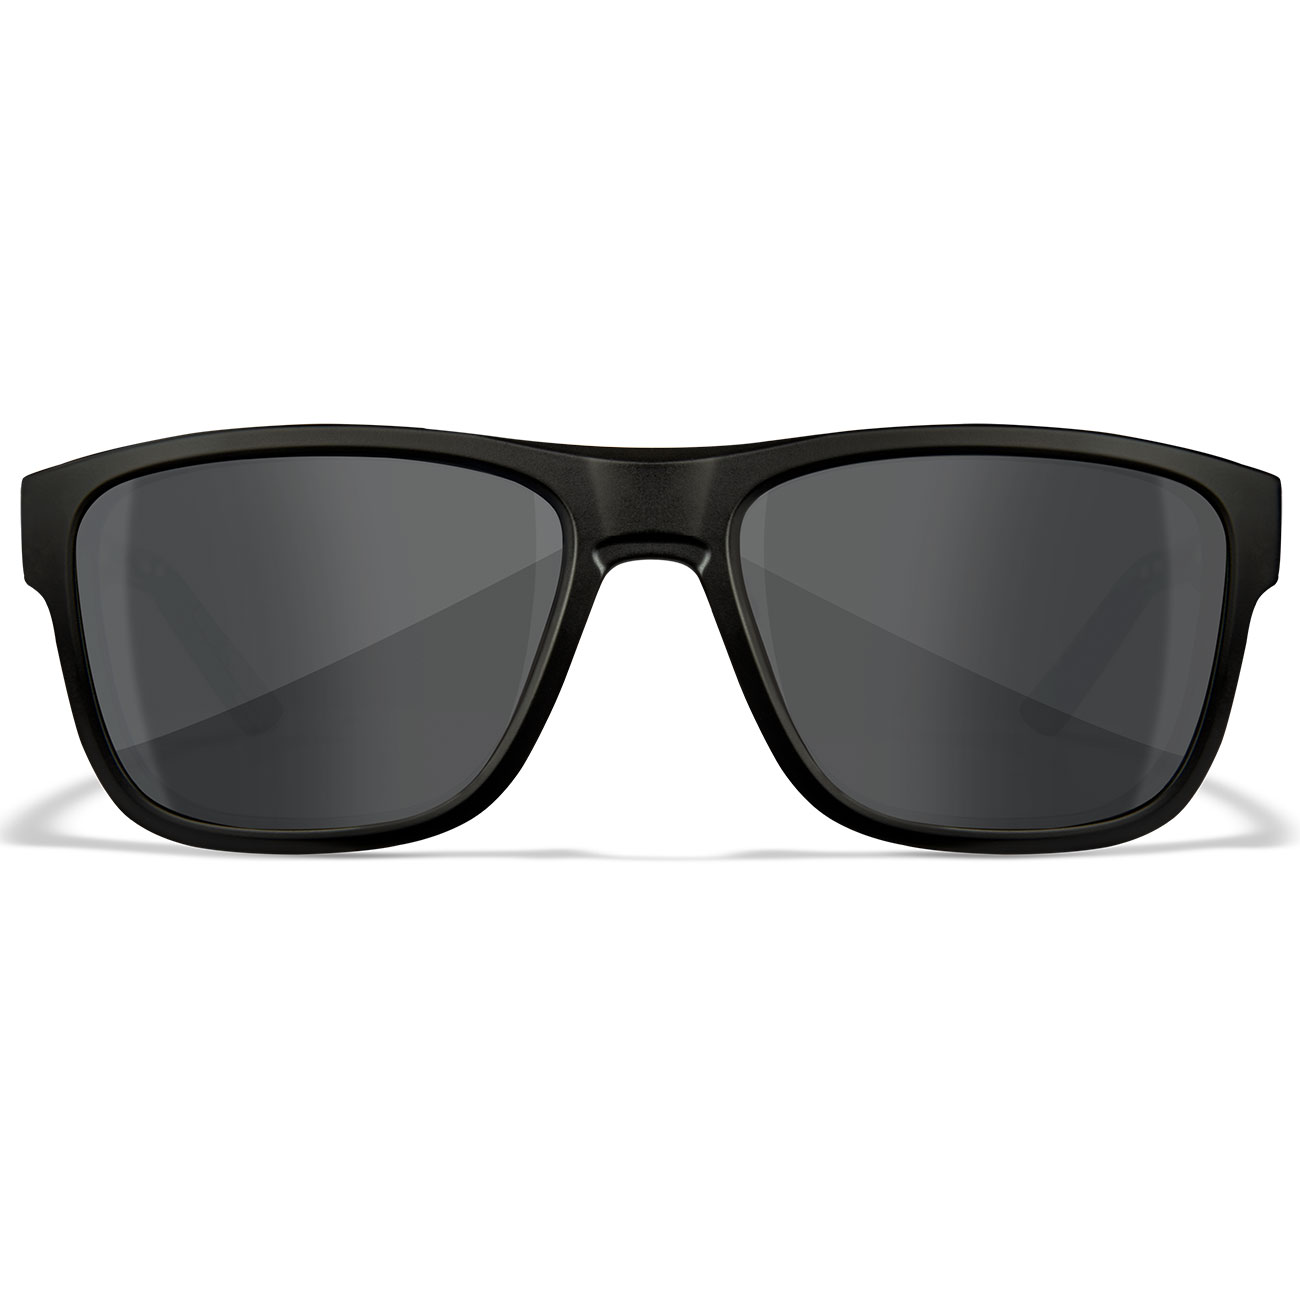 Wiley X Sonnenbrille Ovation matt schwarz Glser grau inkl. Brillenetui und Seitenschutz Bild 1